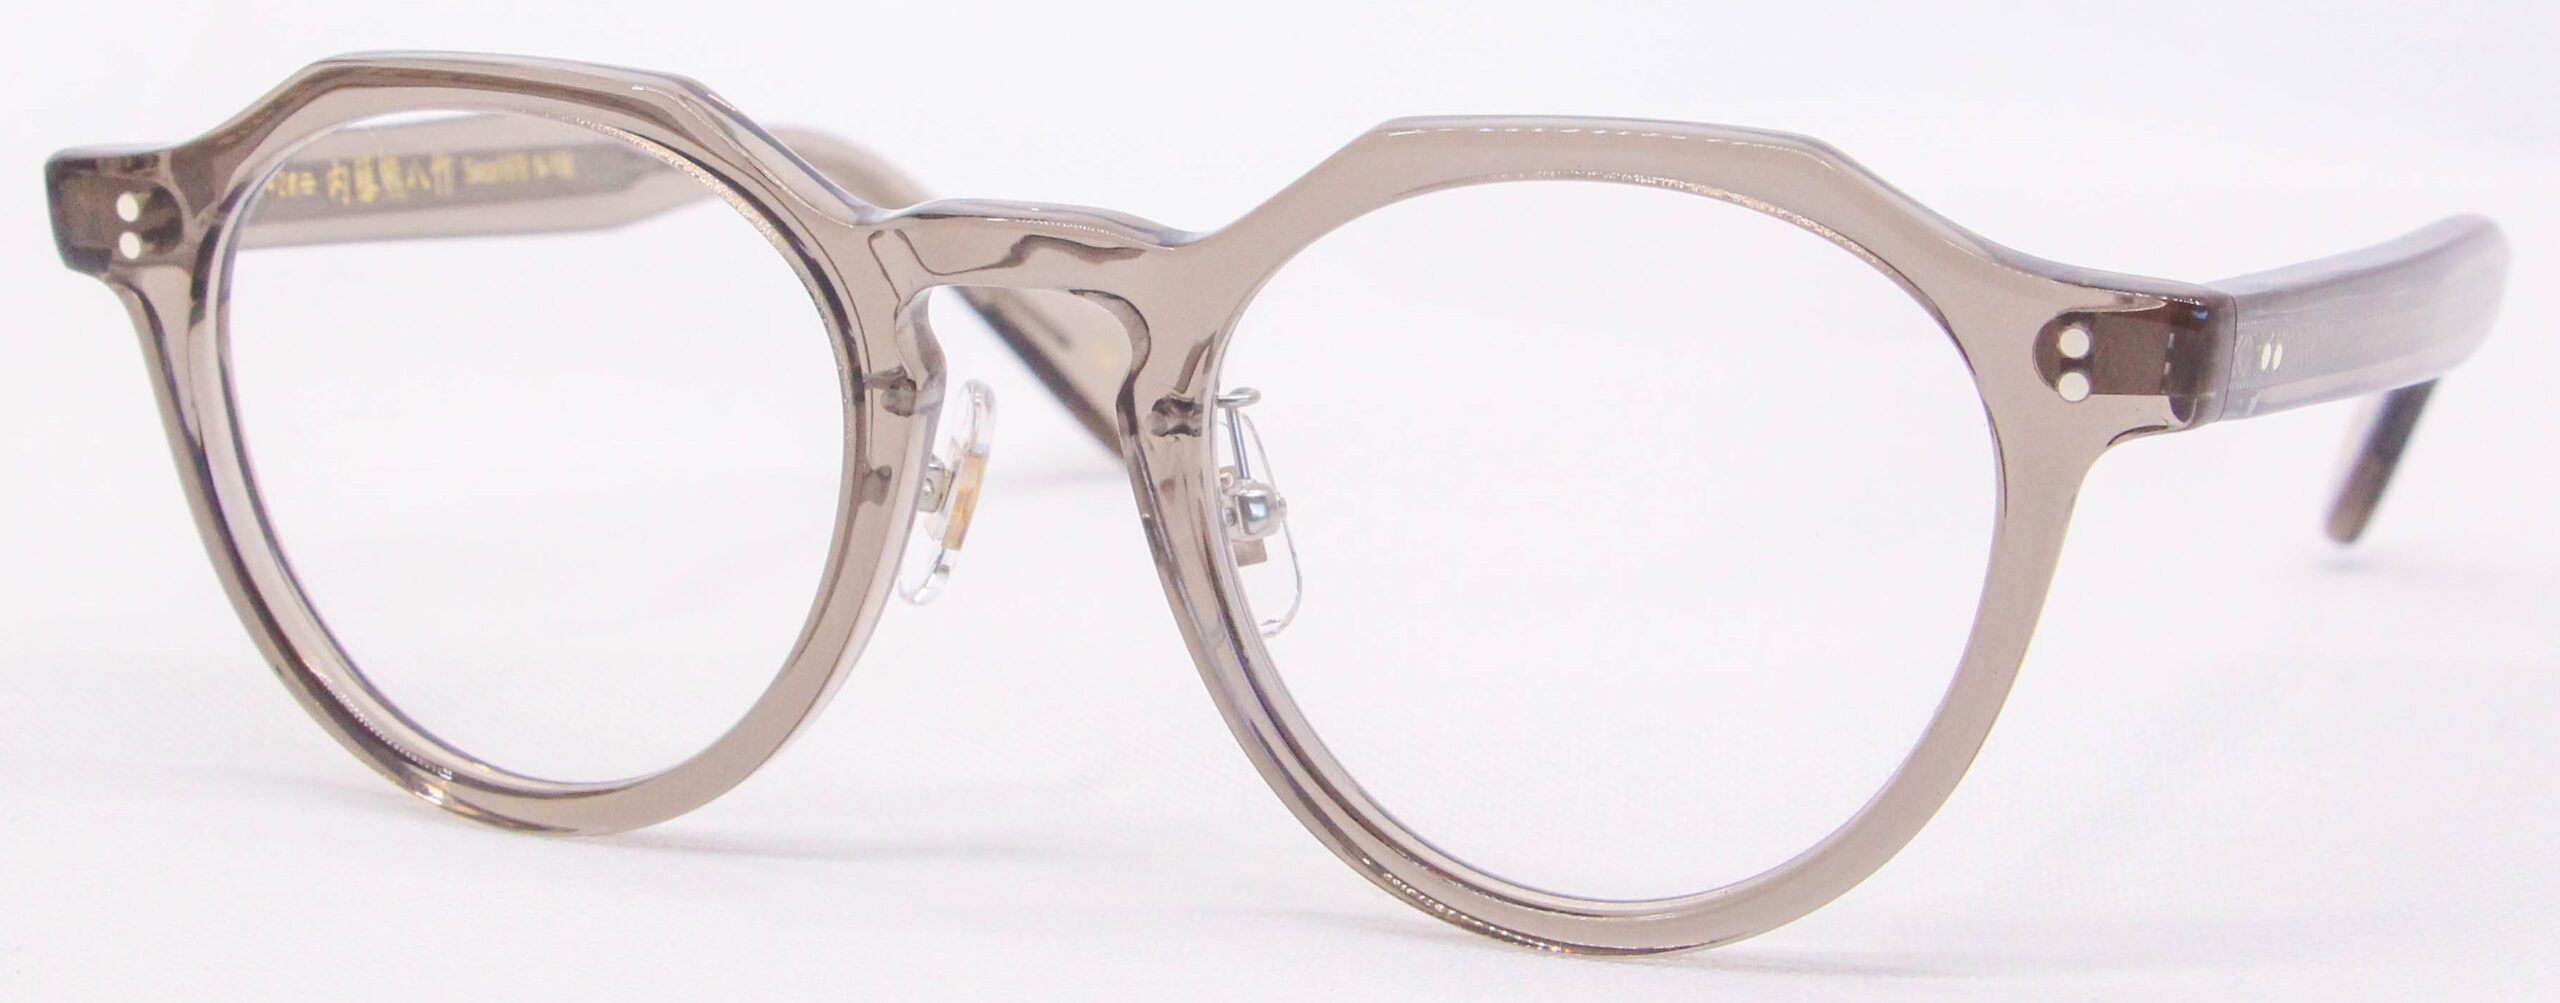 眼鏡のカラータイプC-4 Light-Gray